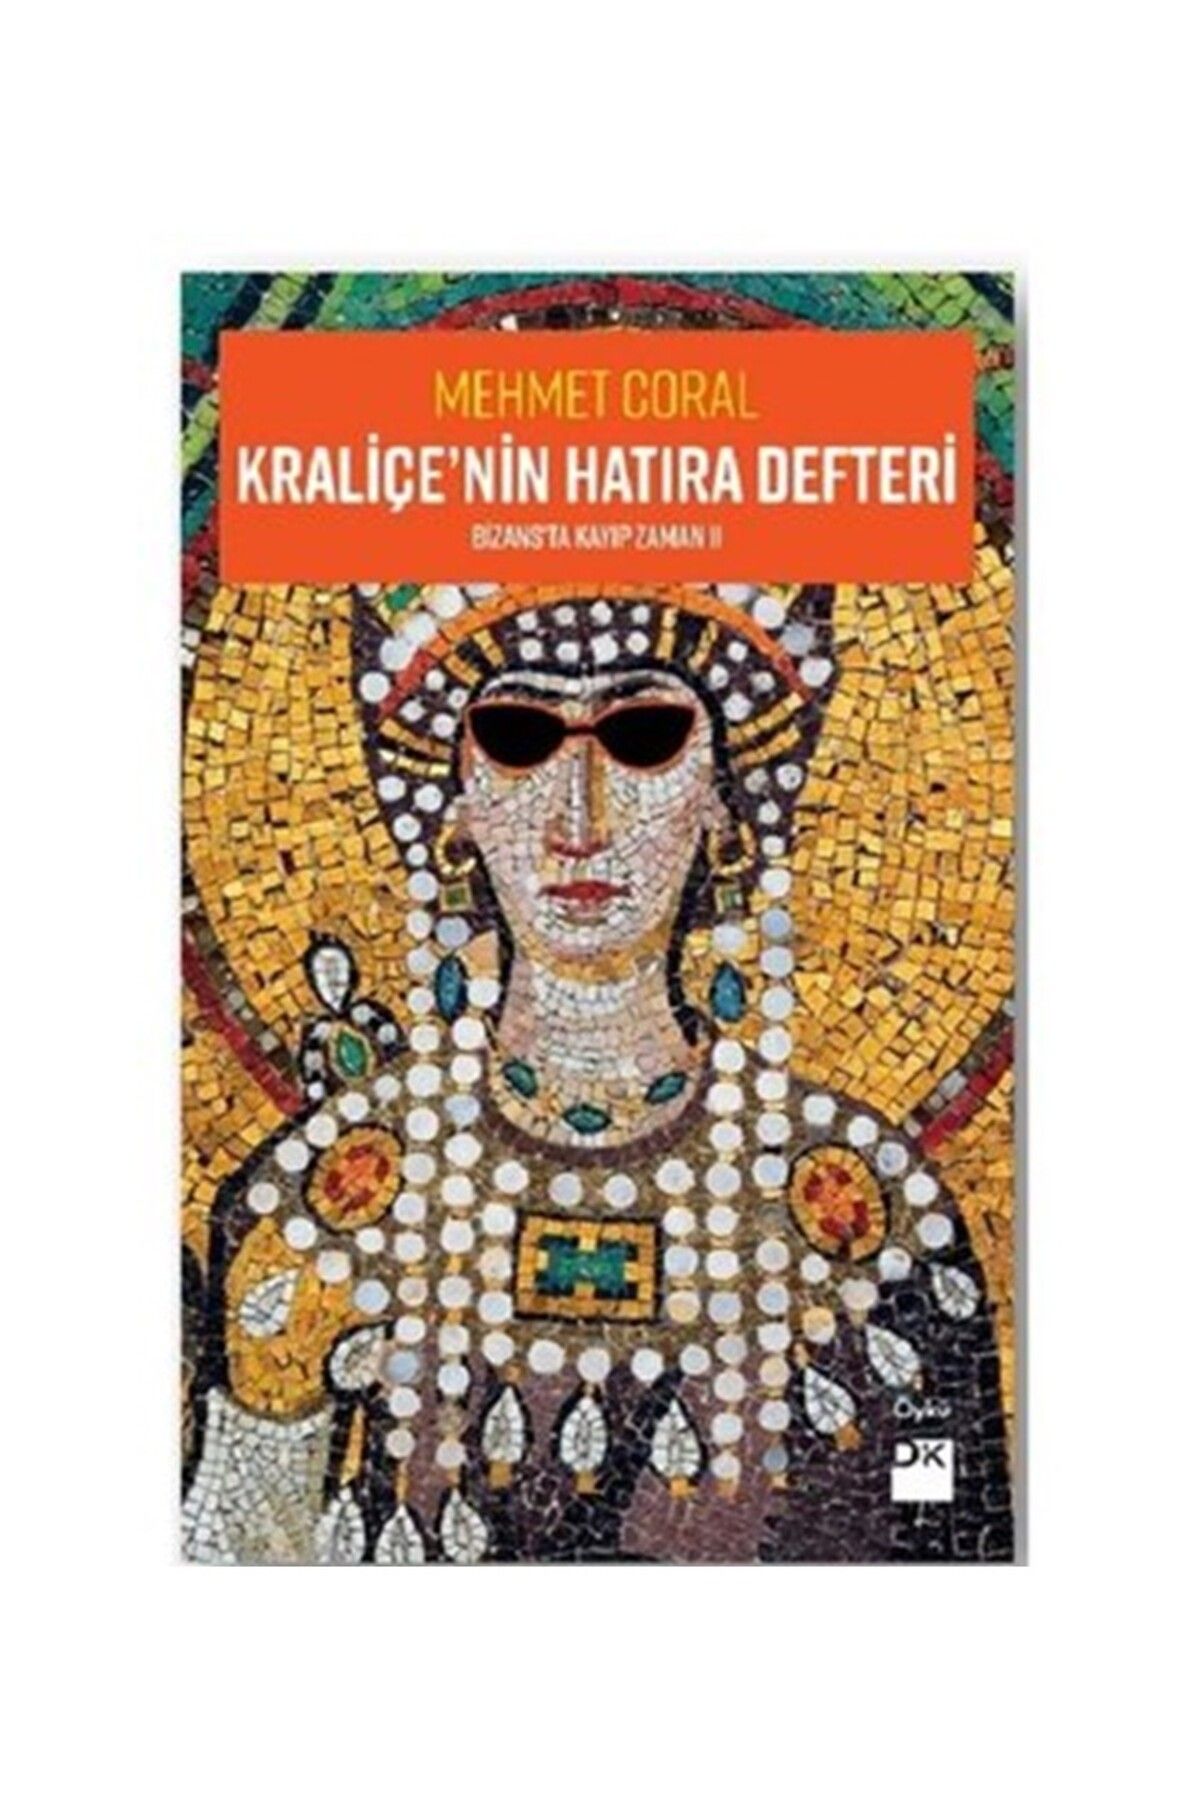 Doğan Kraliçe'nin Hatıra Defteri-Bizans'ta Kayıp Zamanı 2